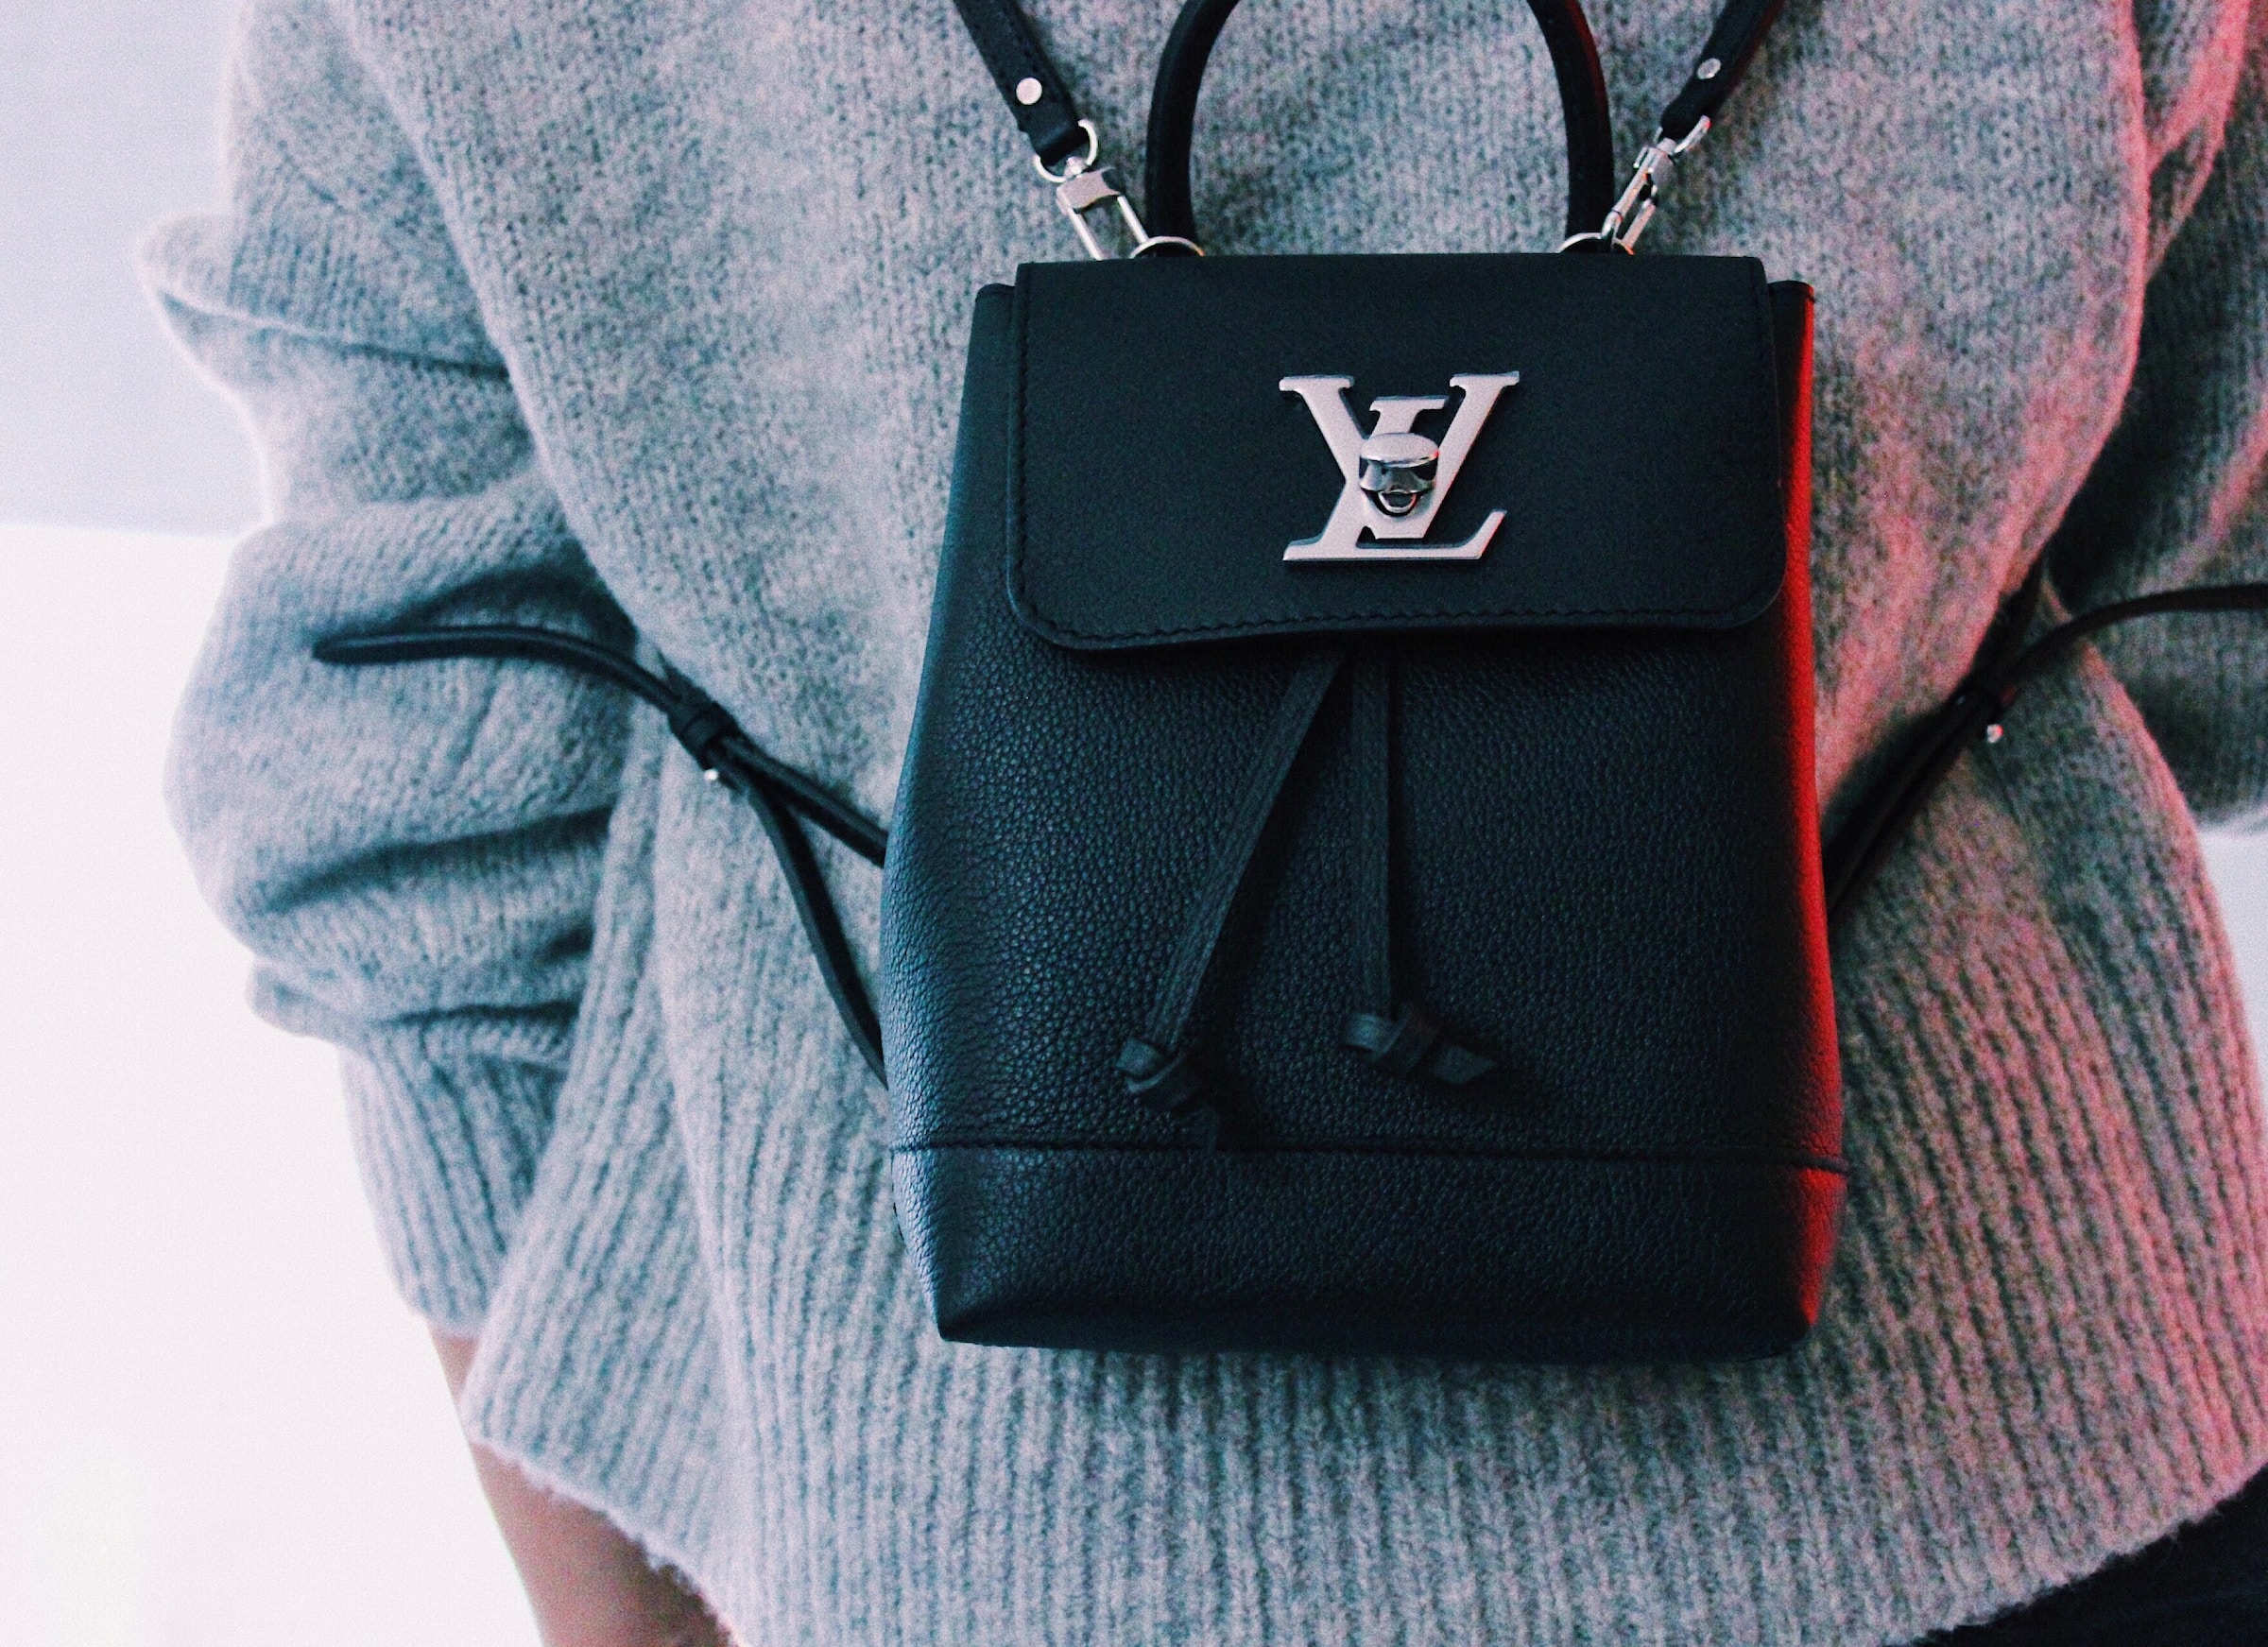 Louis Vuitton backpack | Source: Unsplash